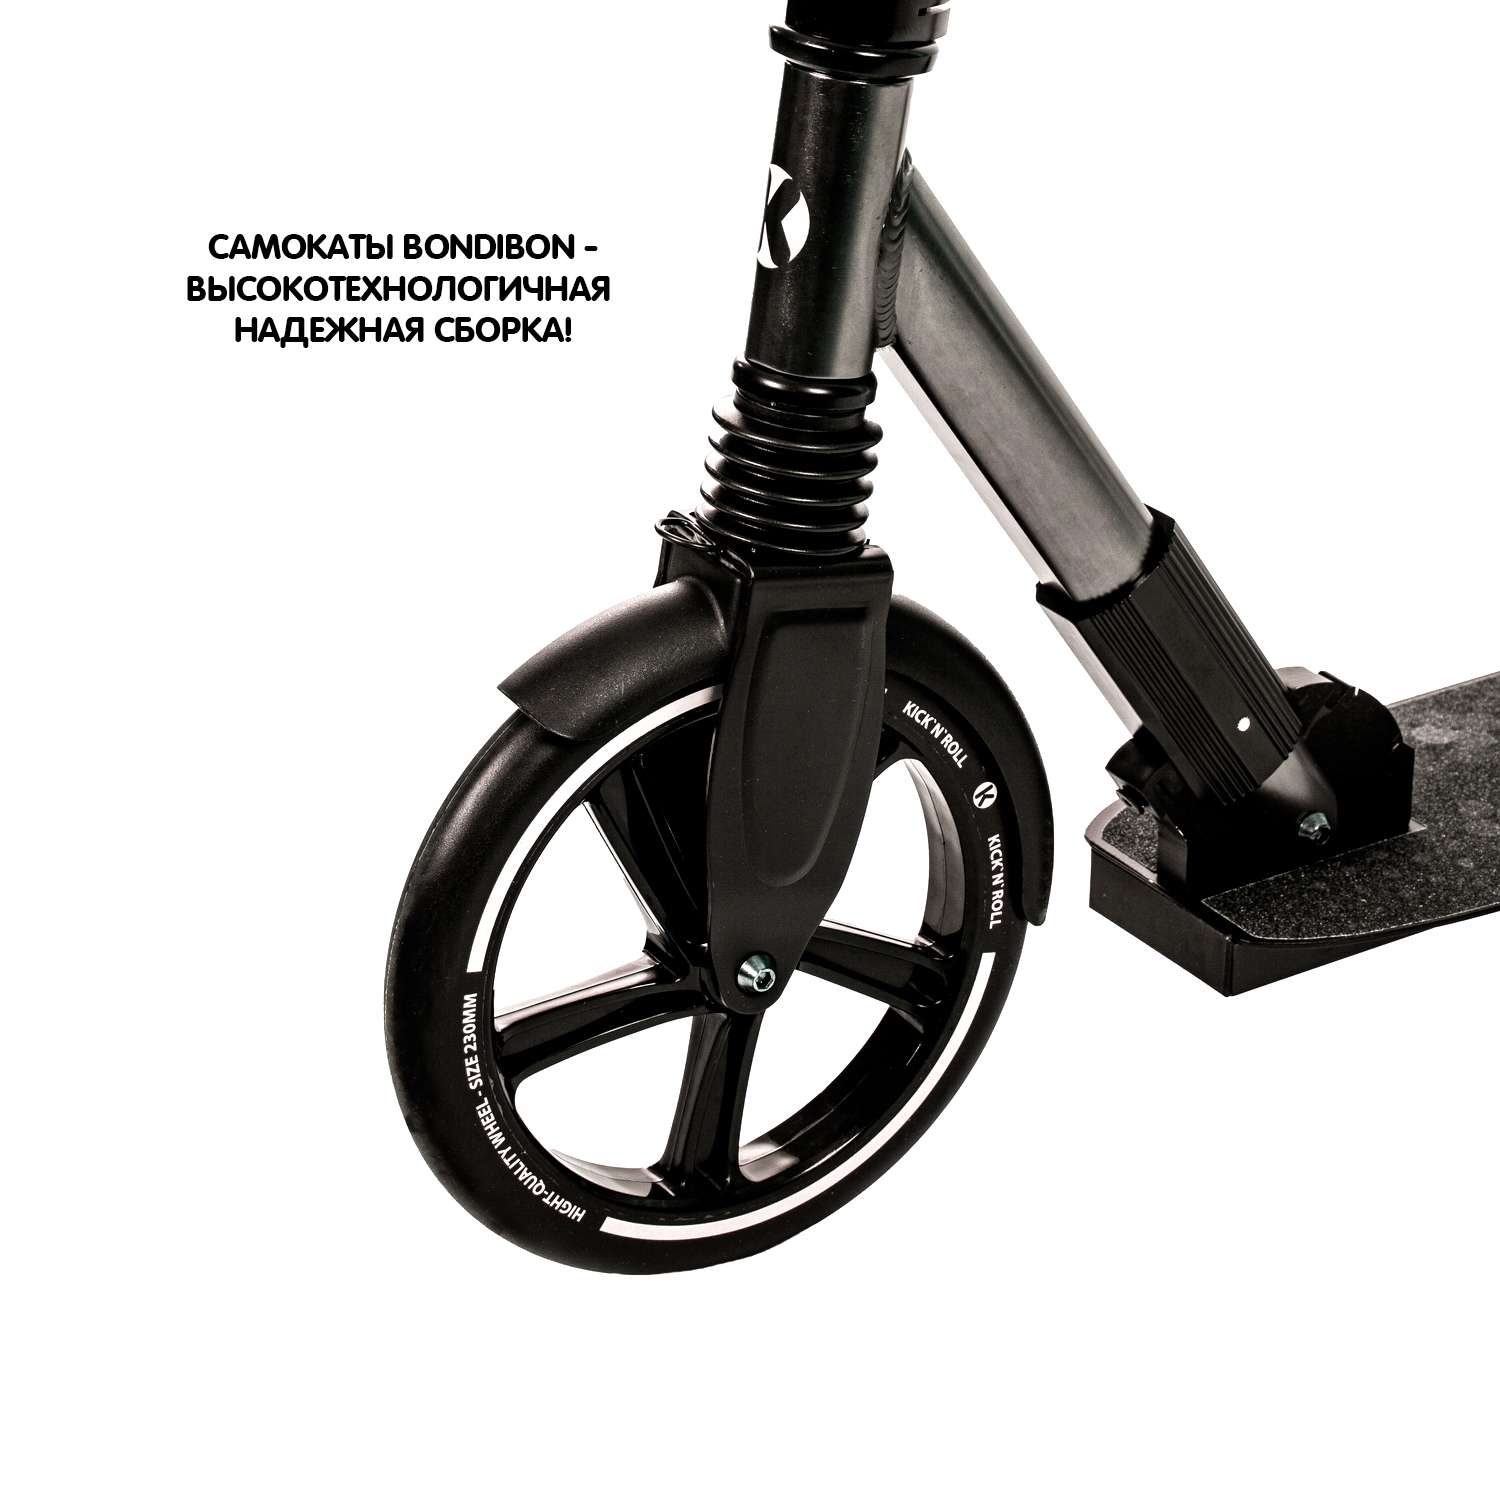 Самокат детский kick n roll складной алюминиевый чёрно-серебристого цвета с амортизатором колеса 230 мм - фото 7